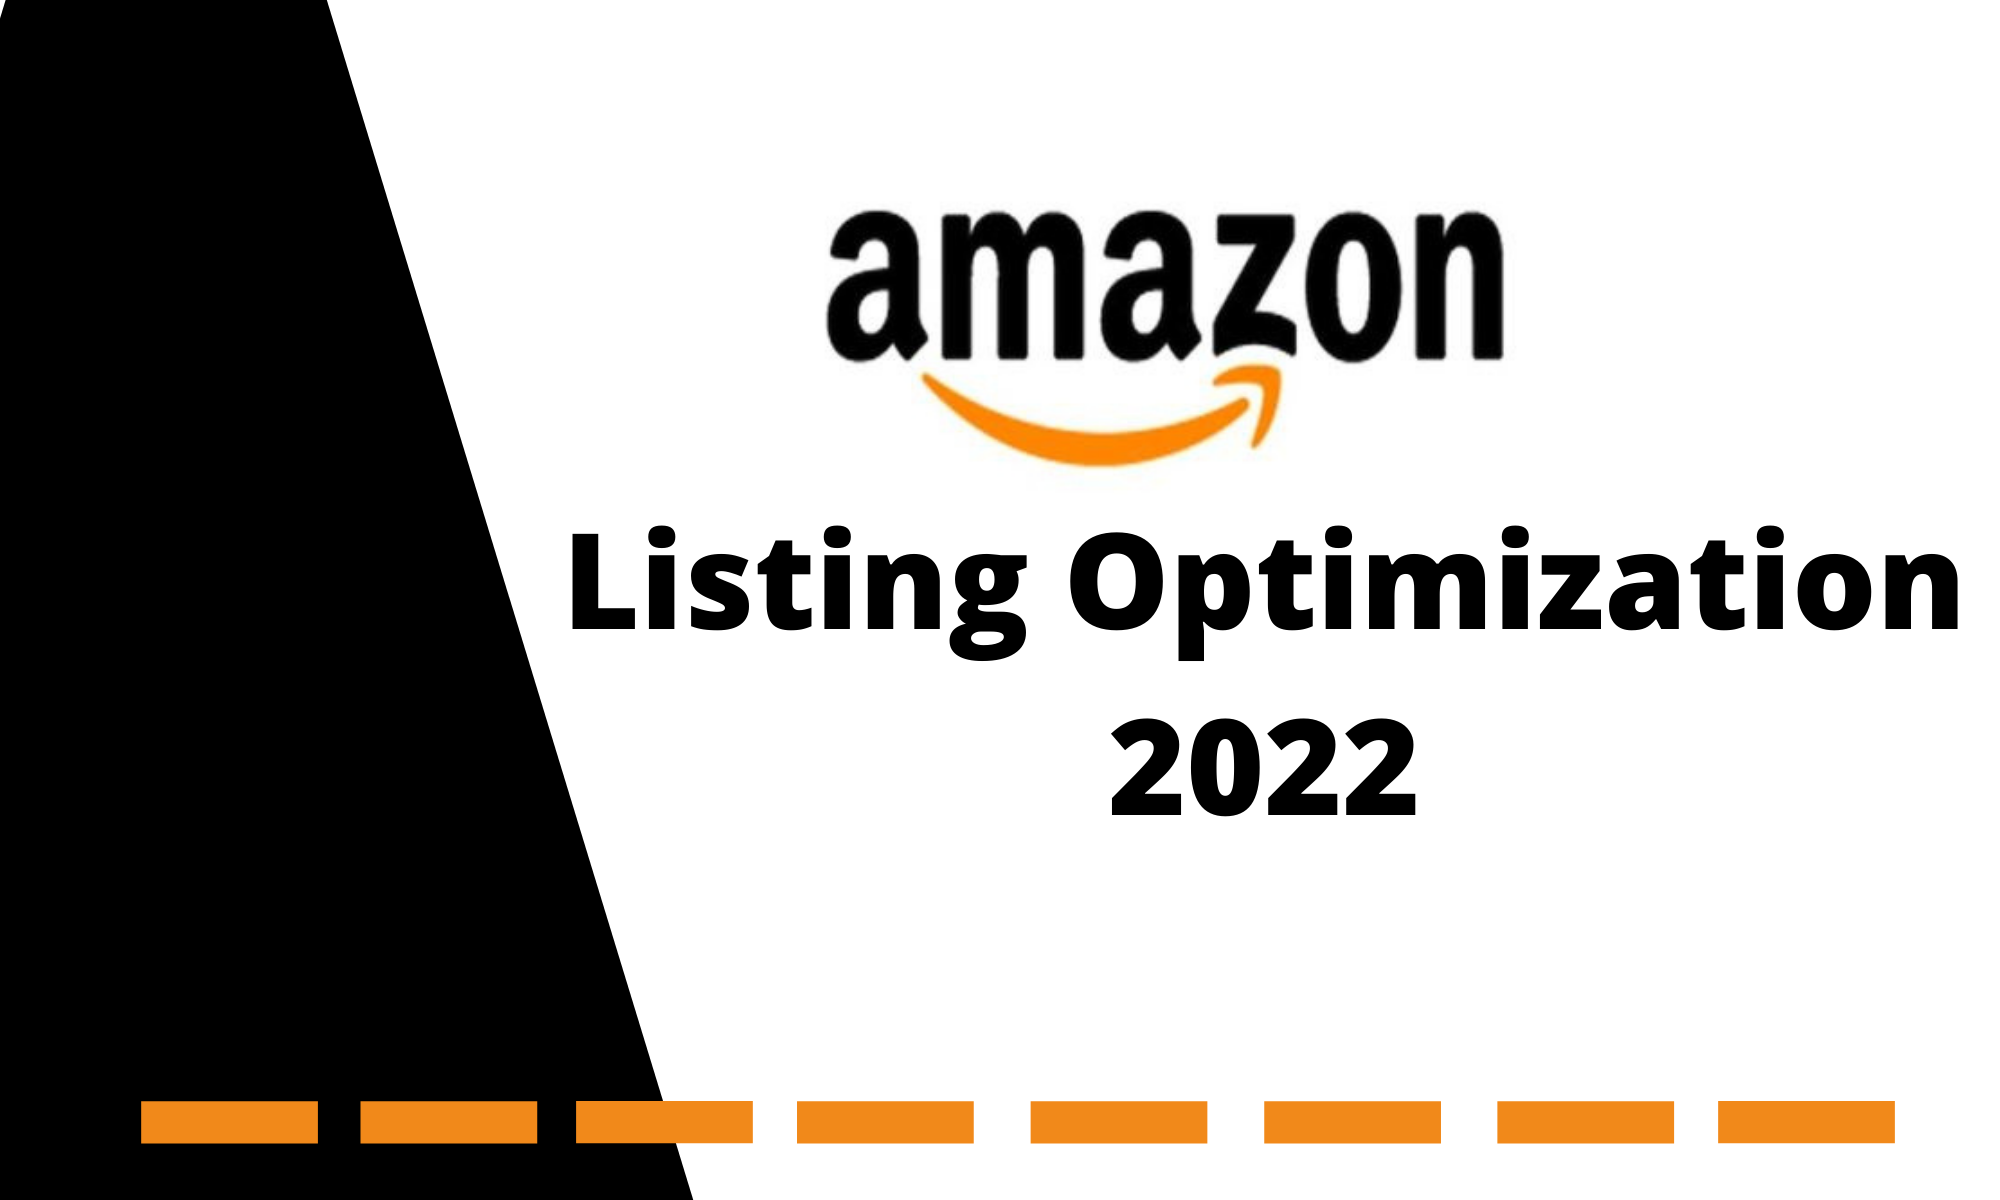 Amazon Listing Optimziation